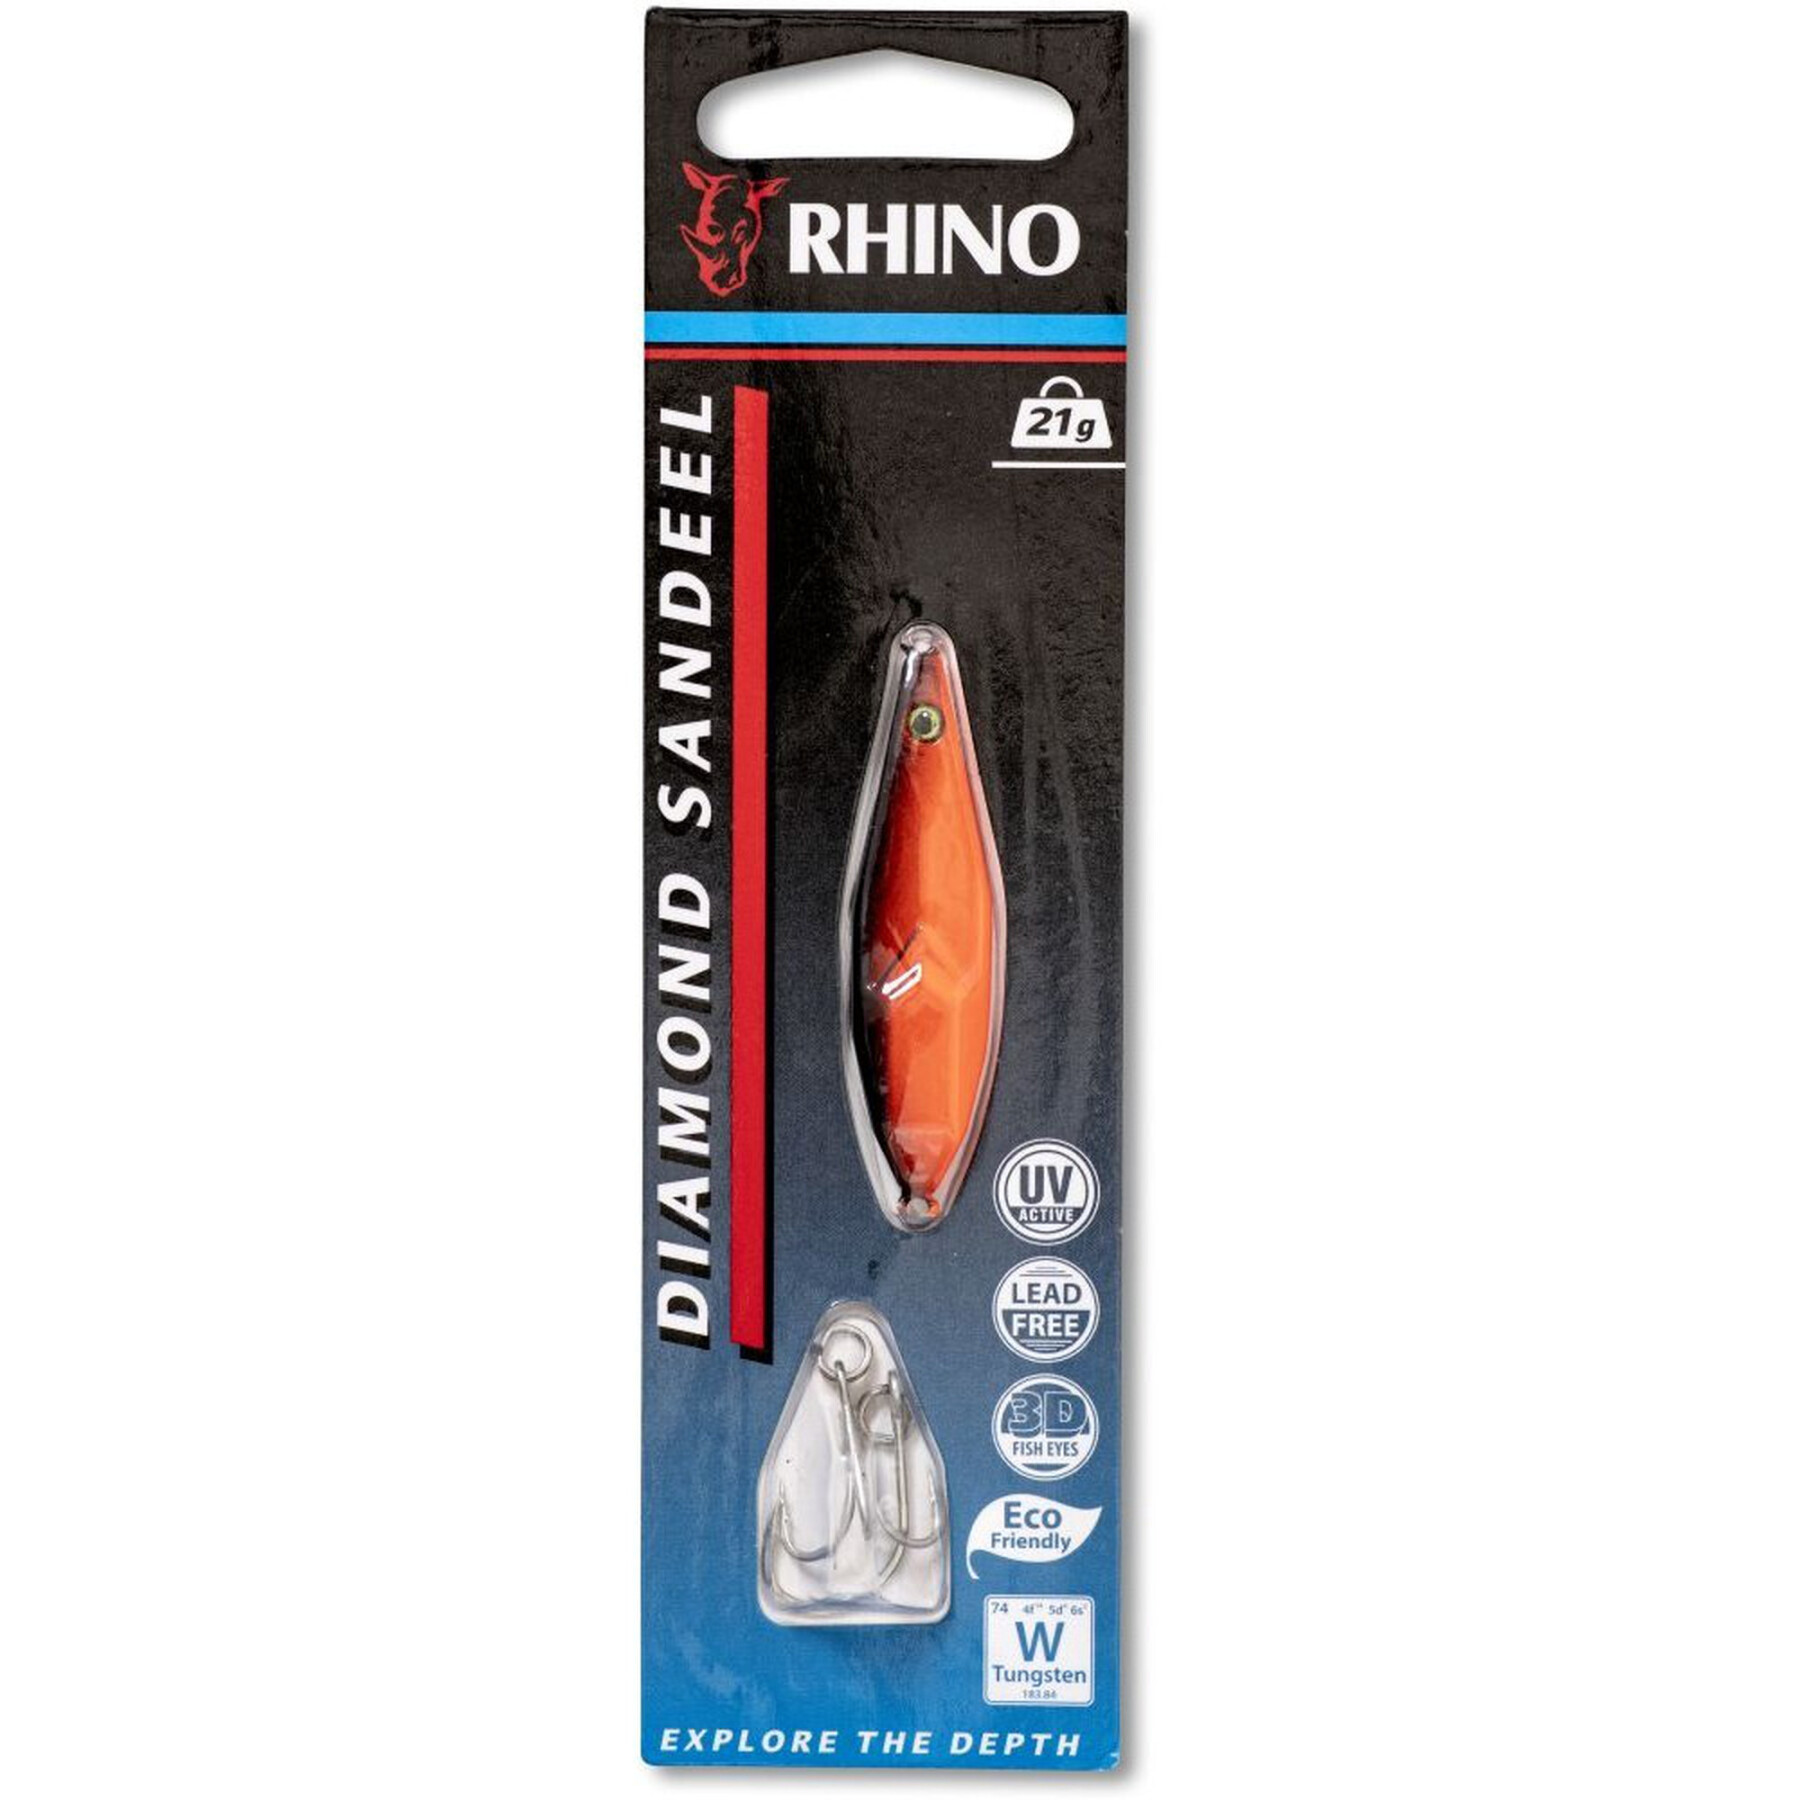 Leurre Rhino Diamond Sandeel – 21g